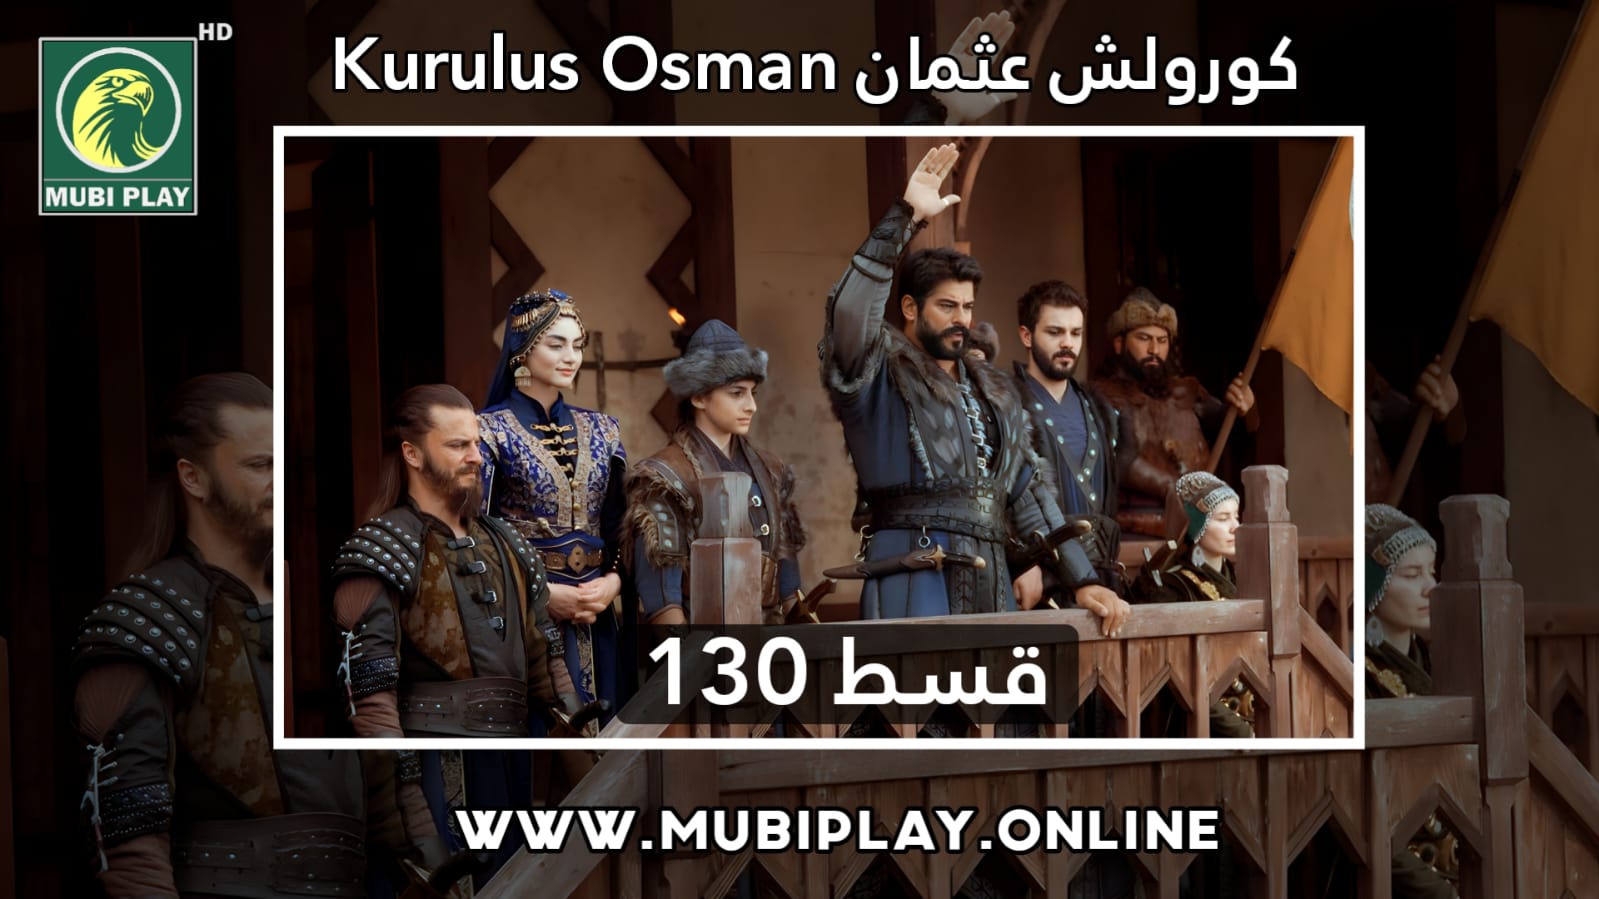 Kurulus Osman Episode 130 Urdu and English Subtitles by MubiPlay